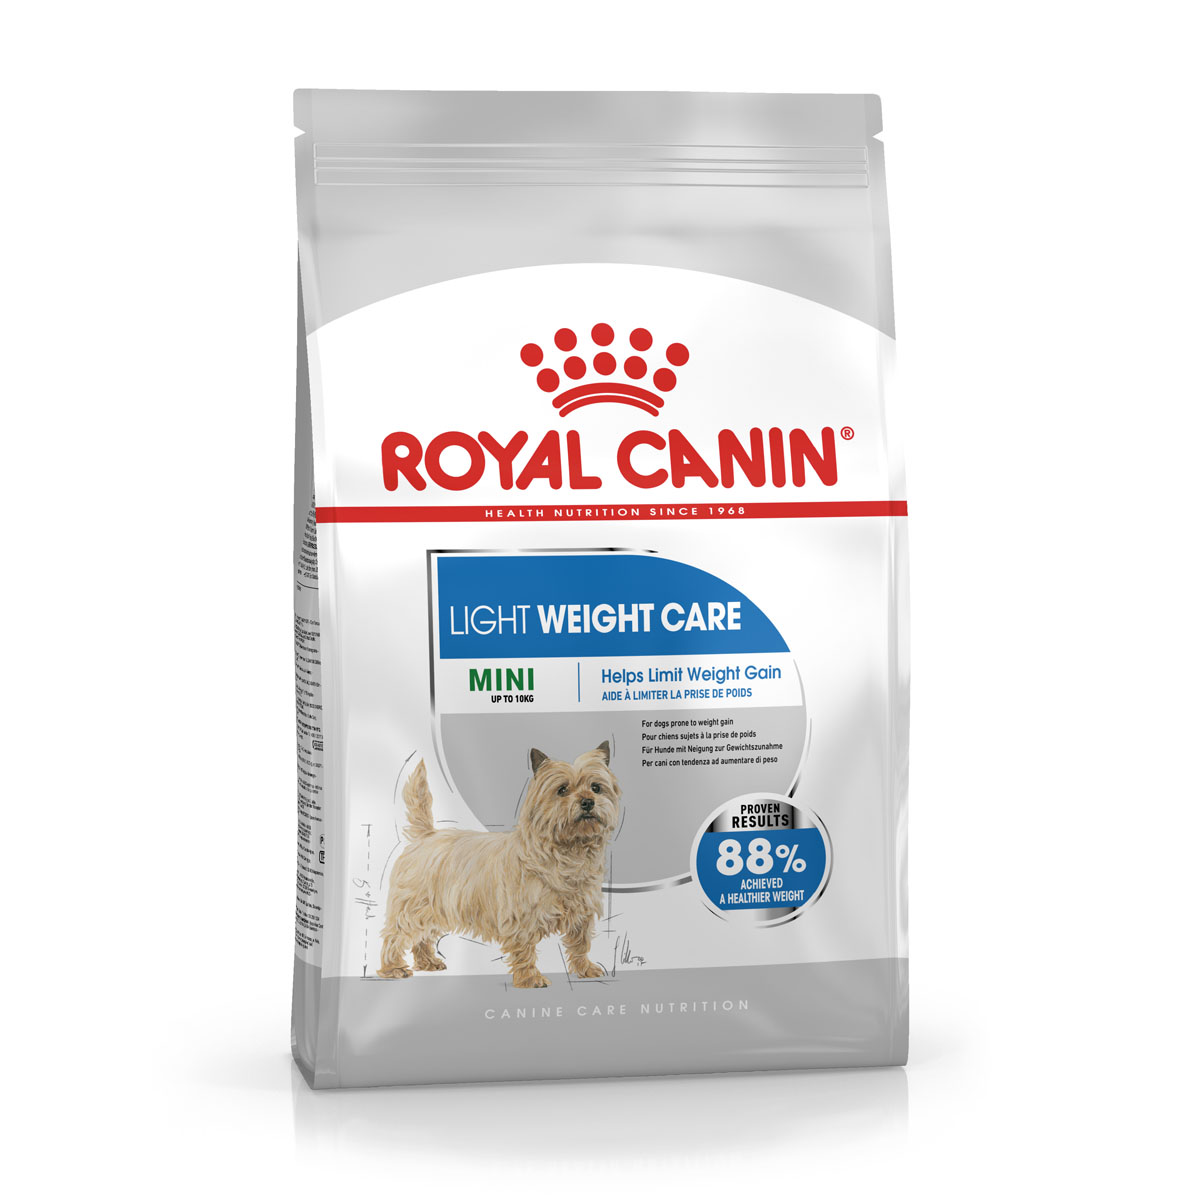 ROYAL CANIN LIGHT WEIGHT CARE MINI Trockenfutter für zu Übergewicht neigenden Hunden 3kg